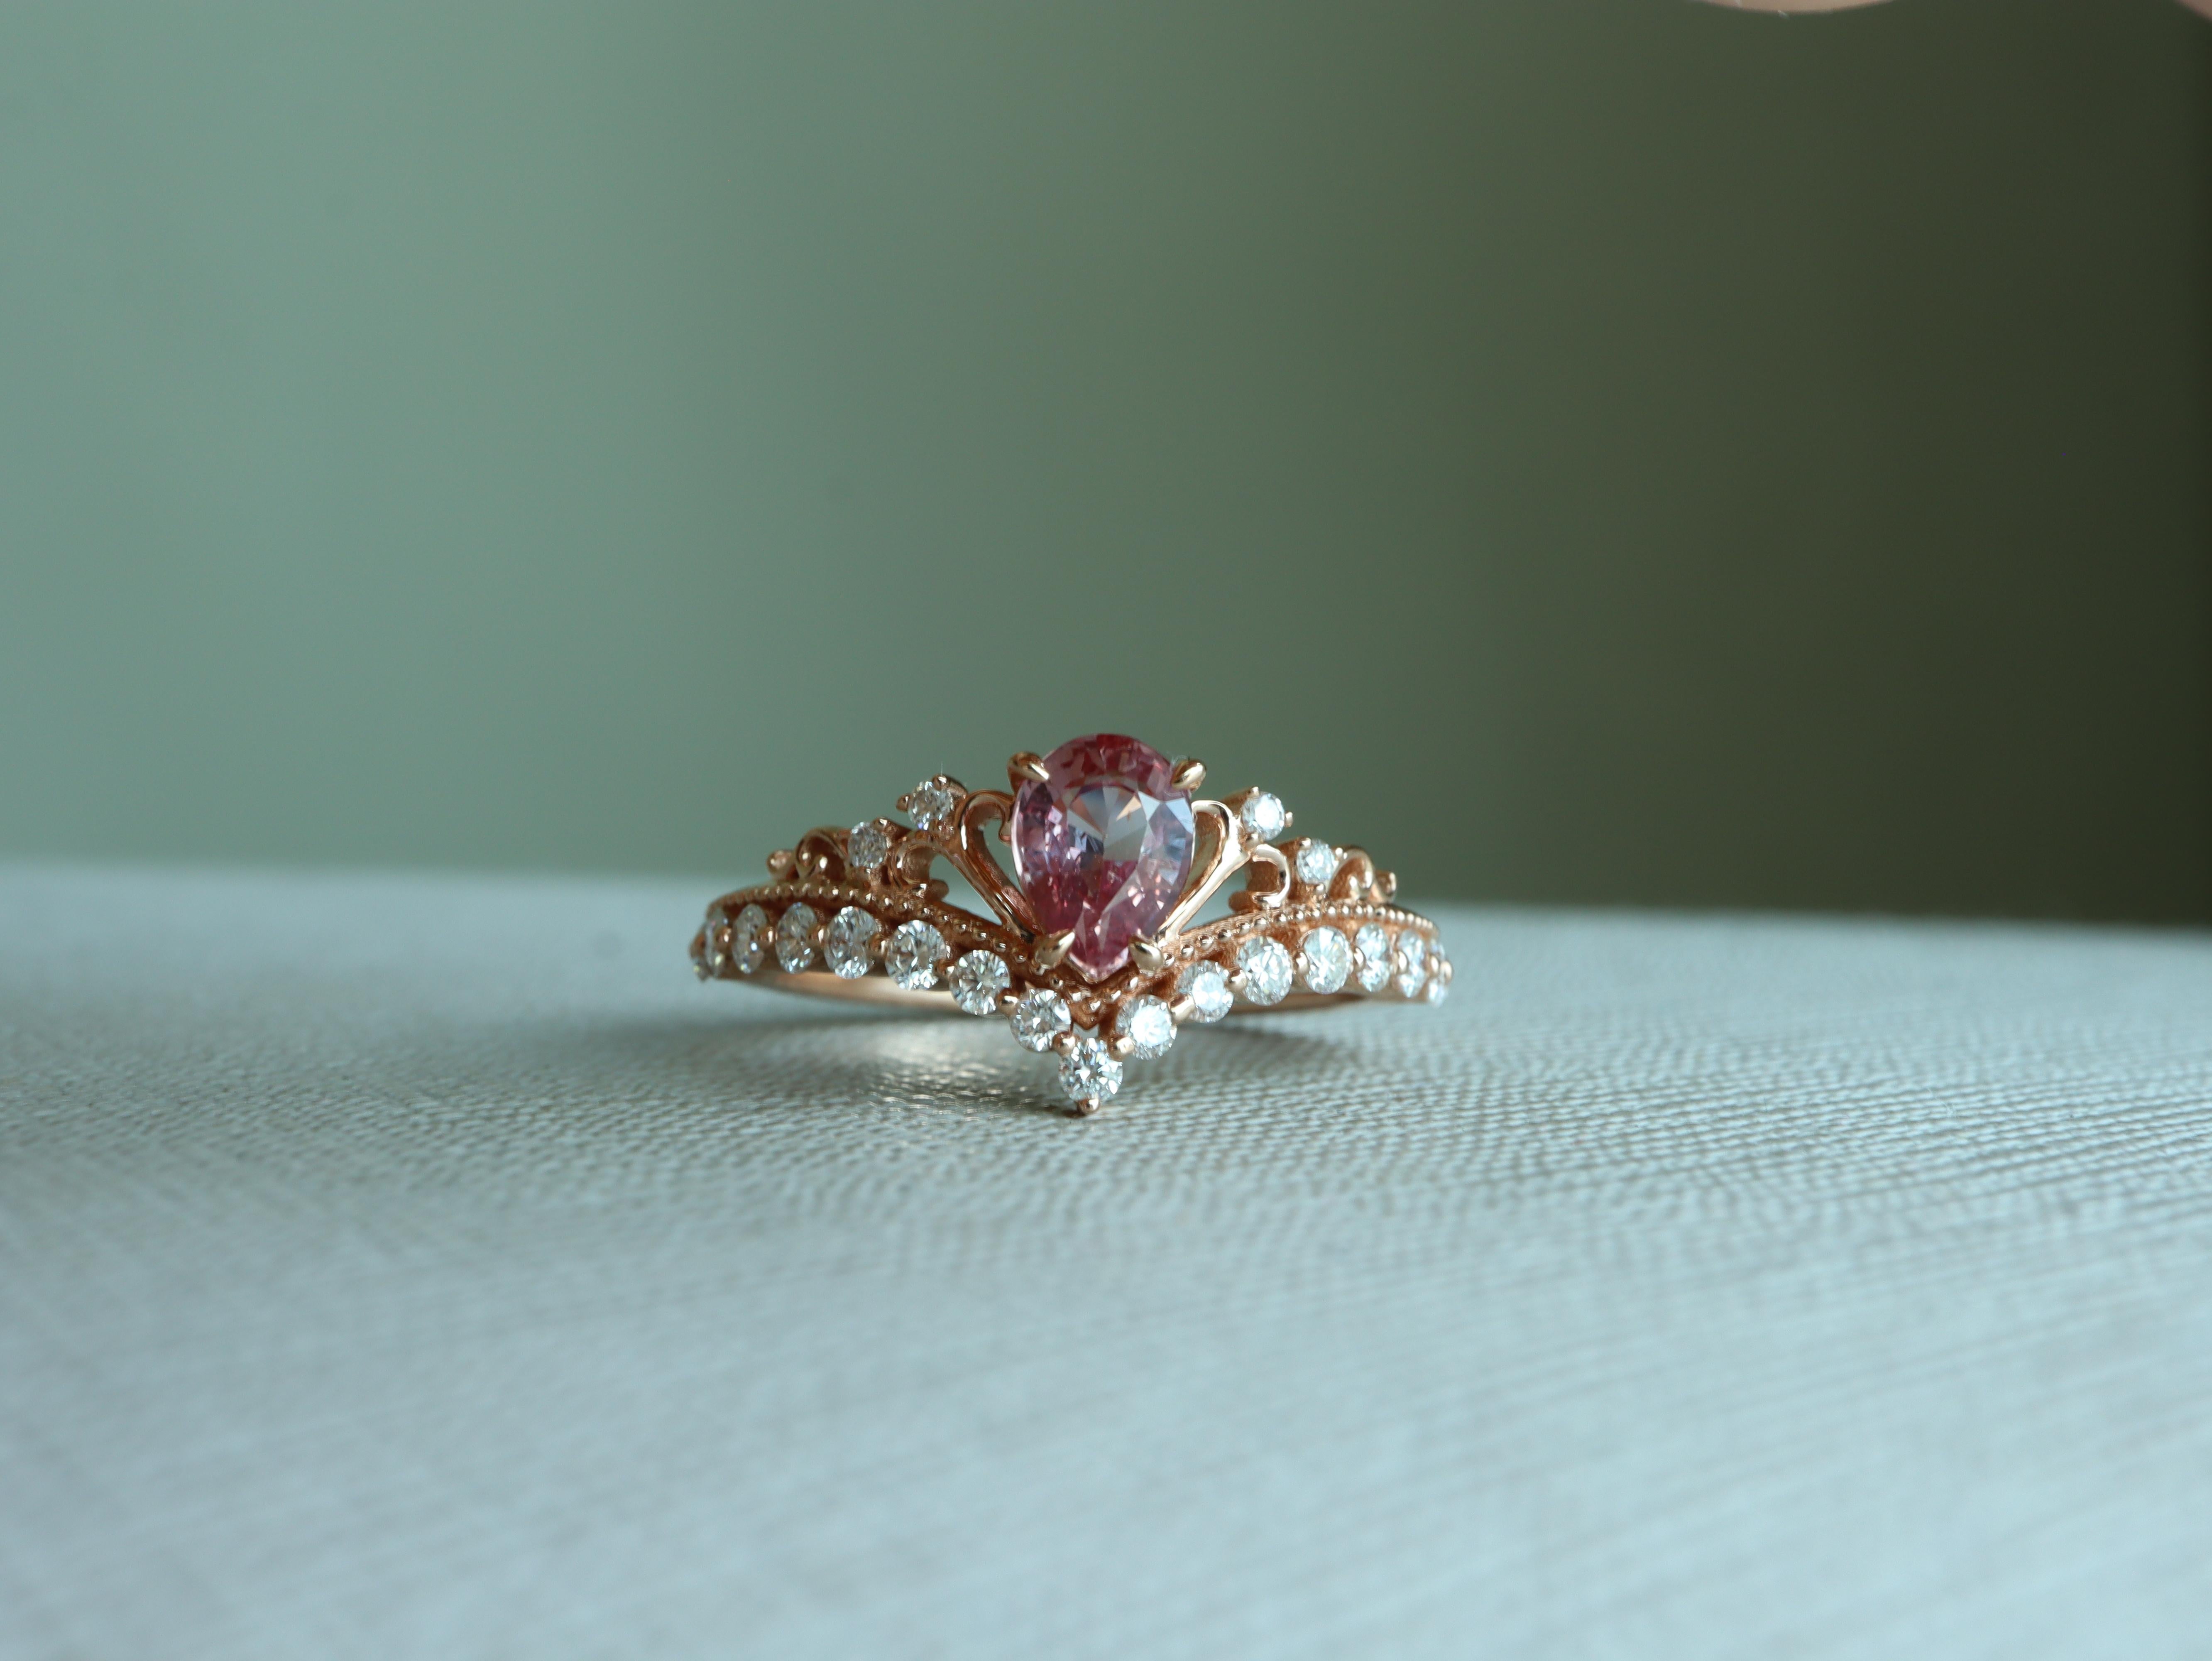 Der Padparadscha-Saphir ist als einer der seltensten Edelsteine der Welt bekannt. Dieser Tiara-Kronenring ist sorgfältig aus massivem 18-karätigem Gold gefertigt und zeigt in der Mitte einen No Heat Padparadscha, der durch schimmernde natürliche